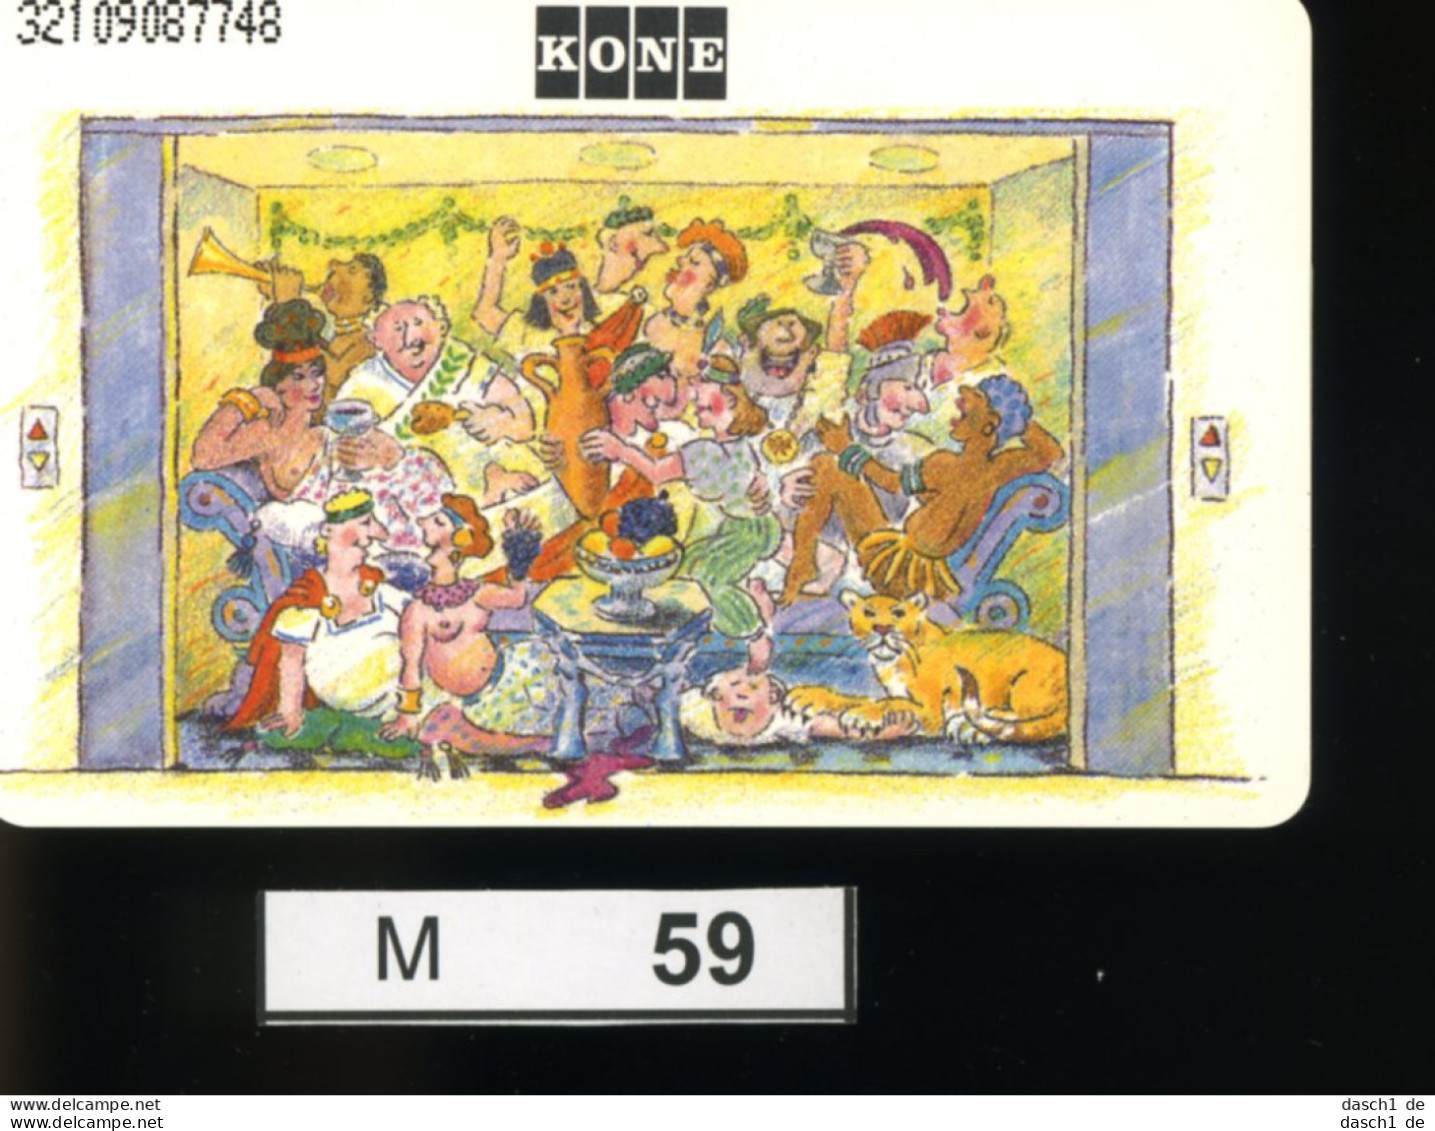 M059, Deutschland, TK, Sonderkarte Kone Aufzug, 12 DM, 1992 - K-Series: Kundenserie